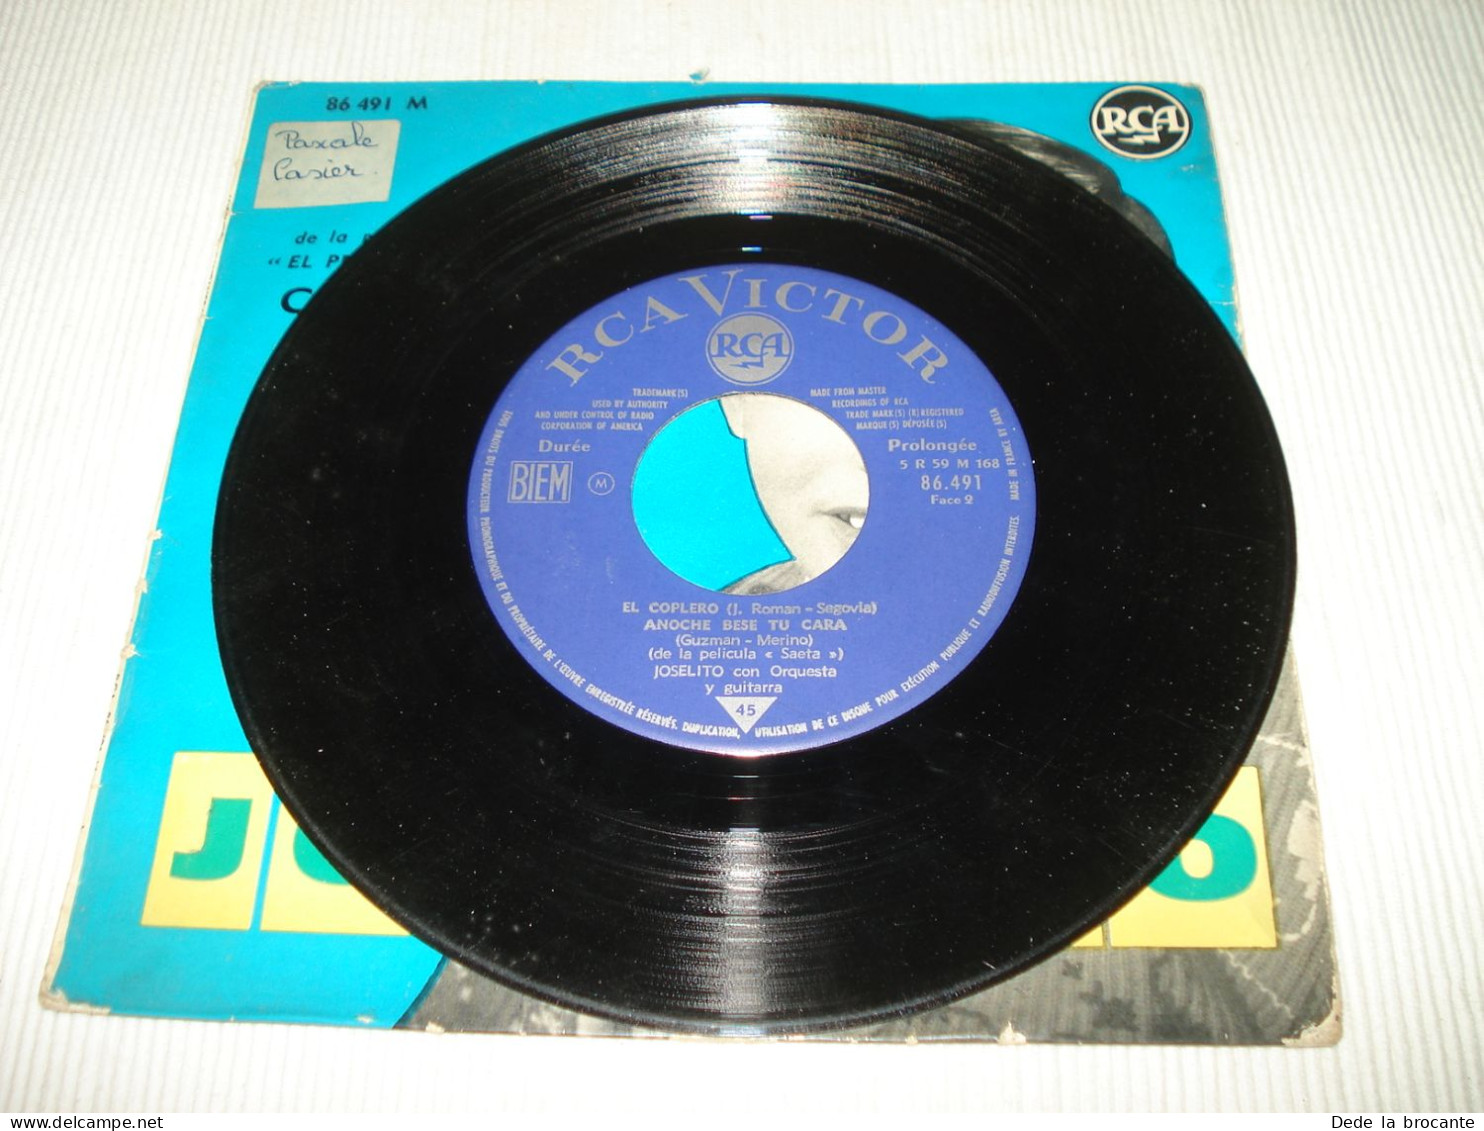 B12 / Joselito – Musique Film Campanera – EP - RCA – 86.491 - FR 1963 -  EX/VG+ - Música De Peliculas